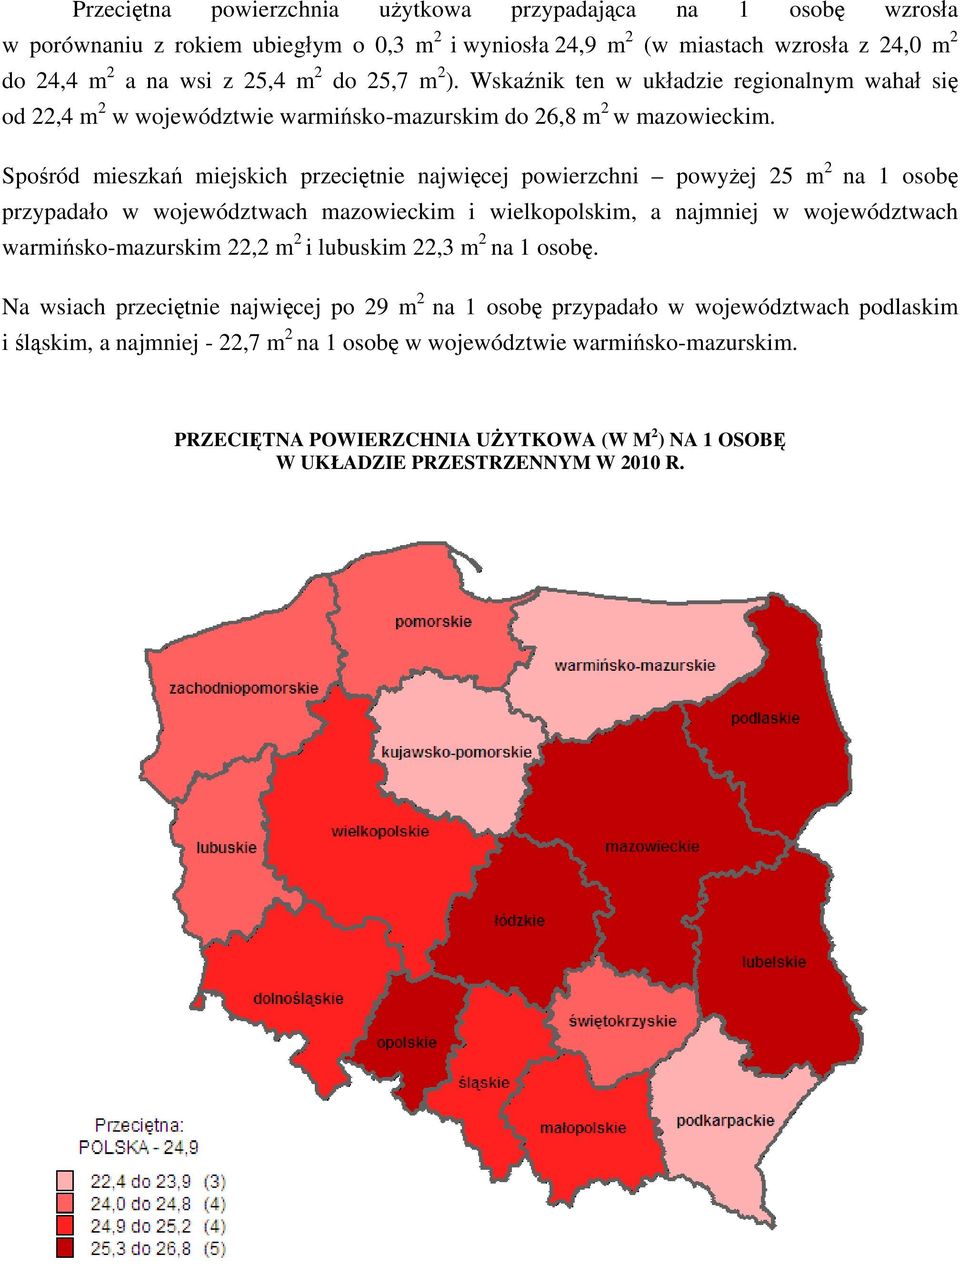 Spośród mieszkań miejskich przeciętnie najwięcej powierzchni powyżej 25 m 2 na 1 osobę przypadało w województwach mazowieckim i wielkopolskim, a najmniej w województwach warmińsko-mazurskim 22,2 m 2